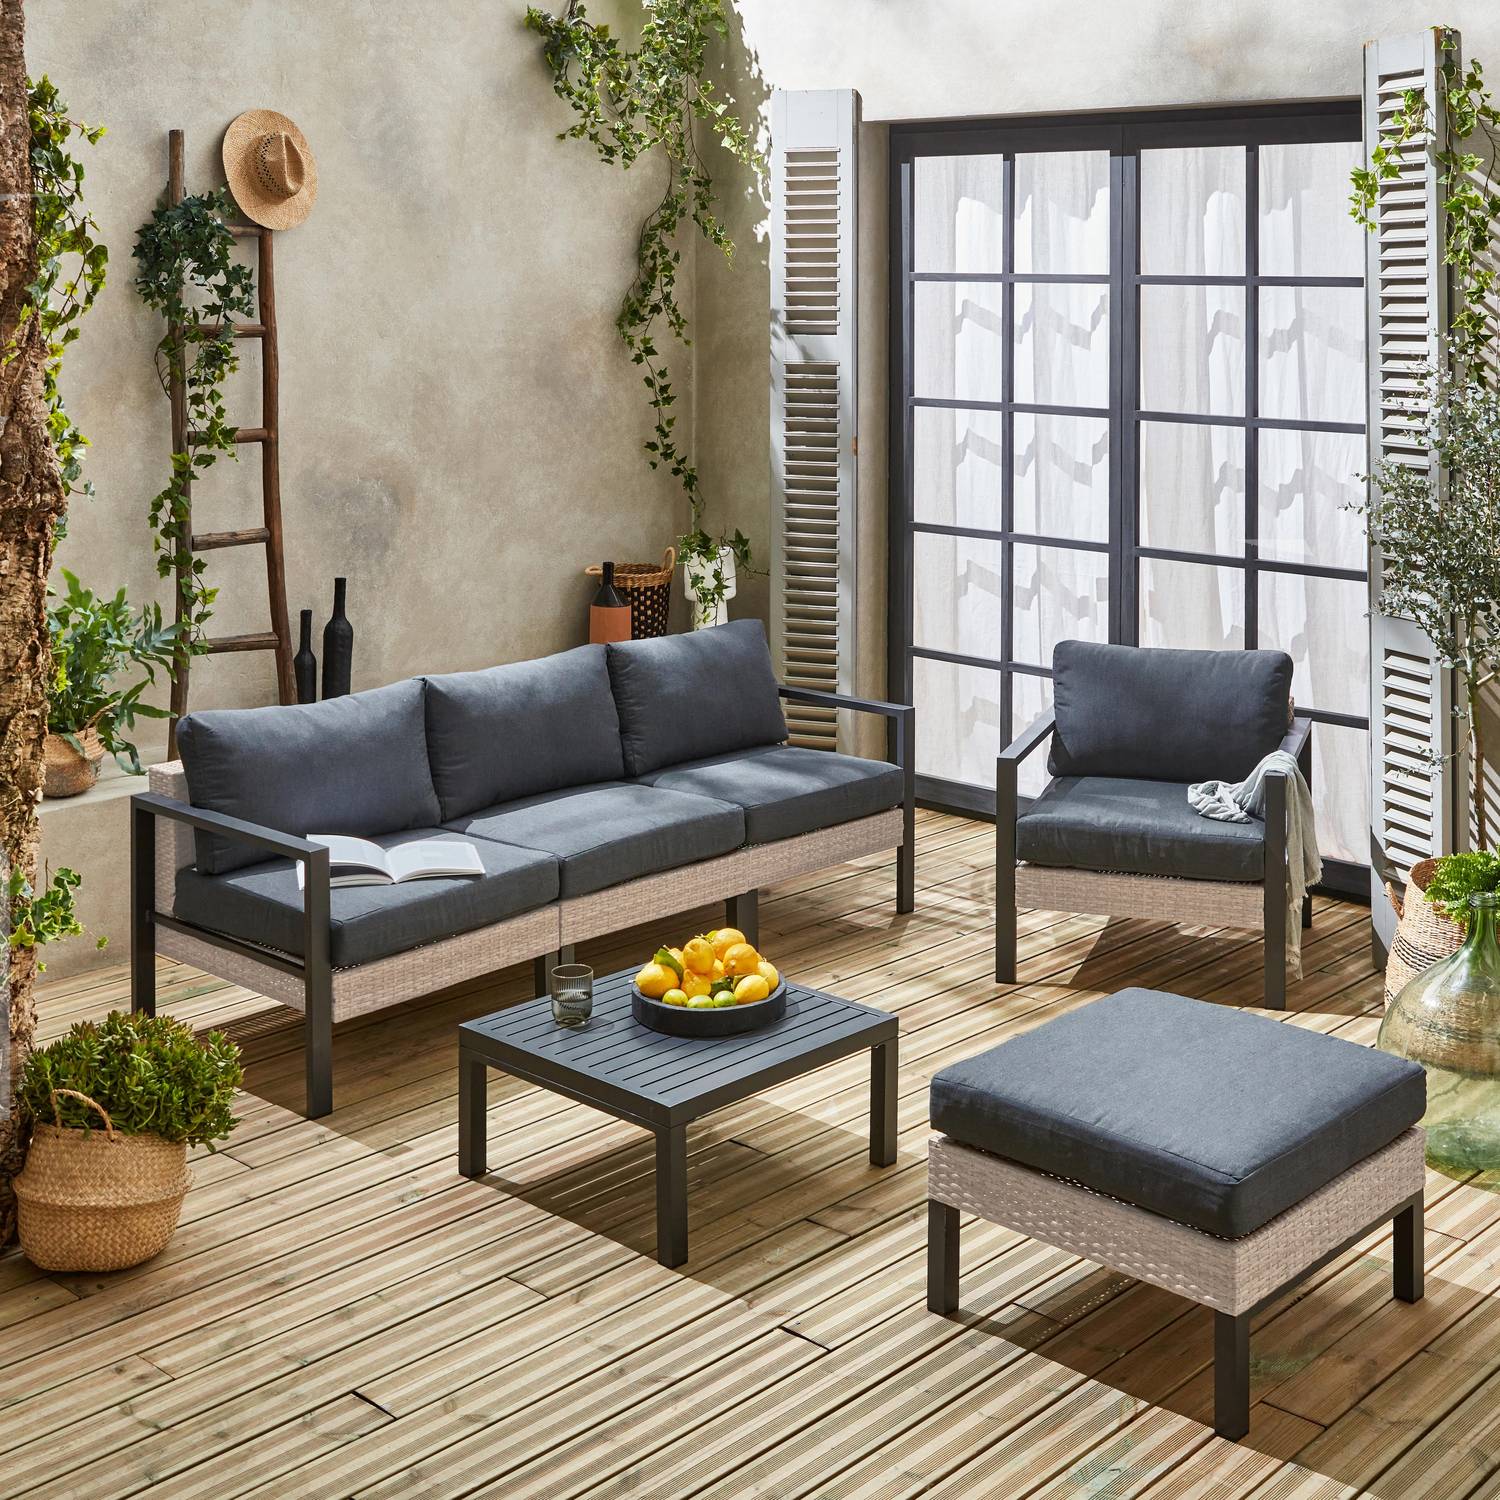 Set di mobili da giardino VELLETRI, grigio scuro, alluminio, resina intrecciata, 5 posti L68 x P74 x H63/76cm Photo1